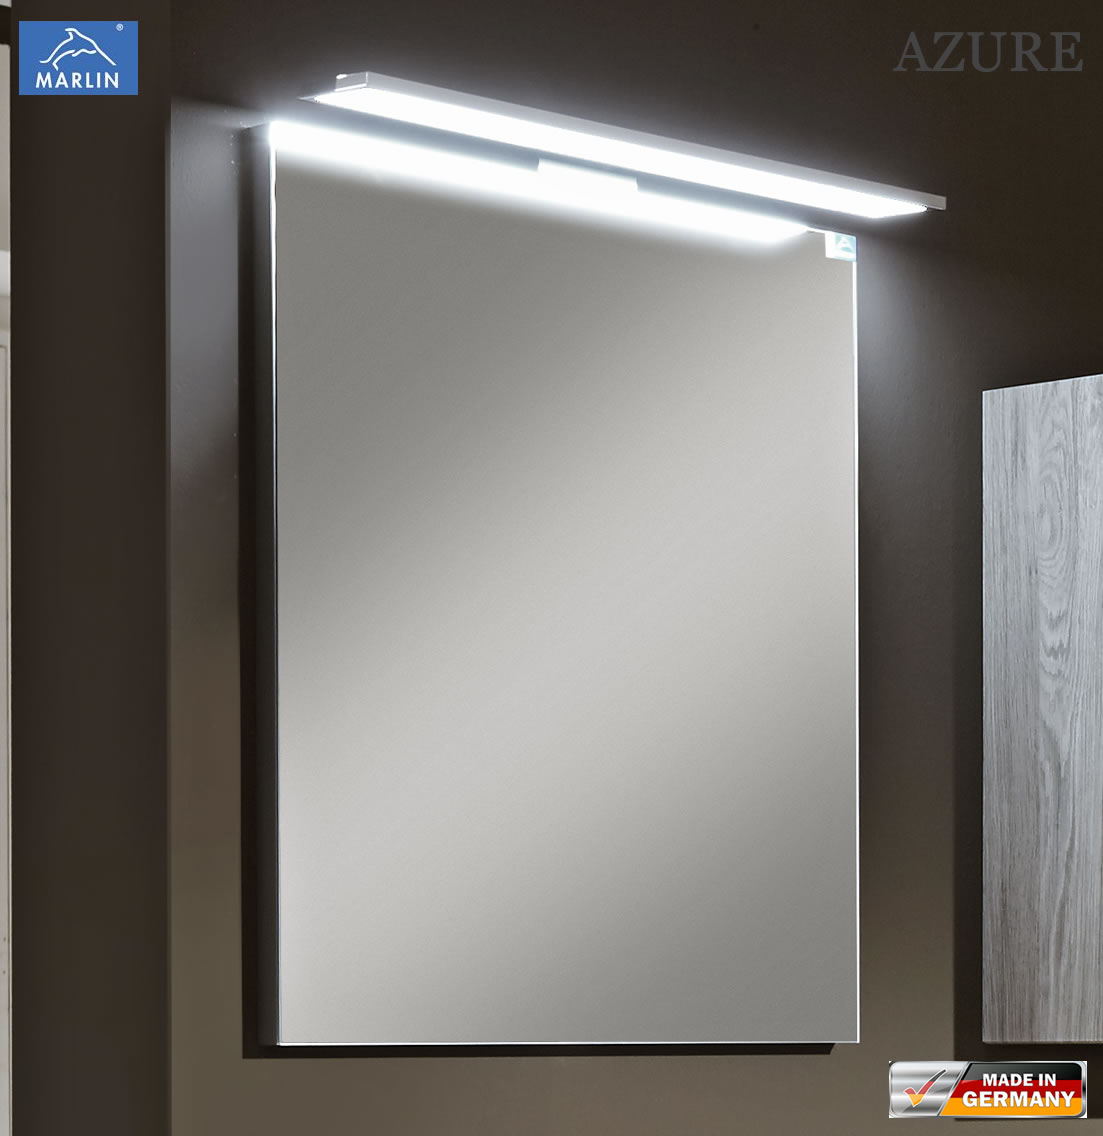 Marlin Azure Spiegel 60 cm mit LED Aufsatzleuchte (2 Lichtfarben)